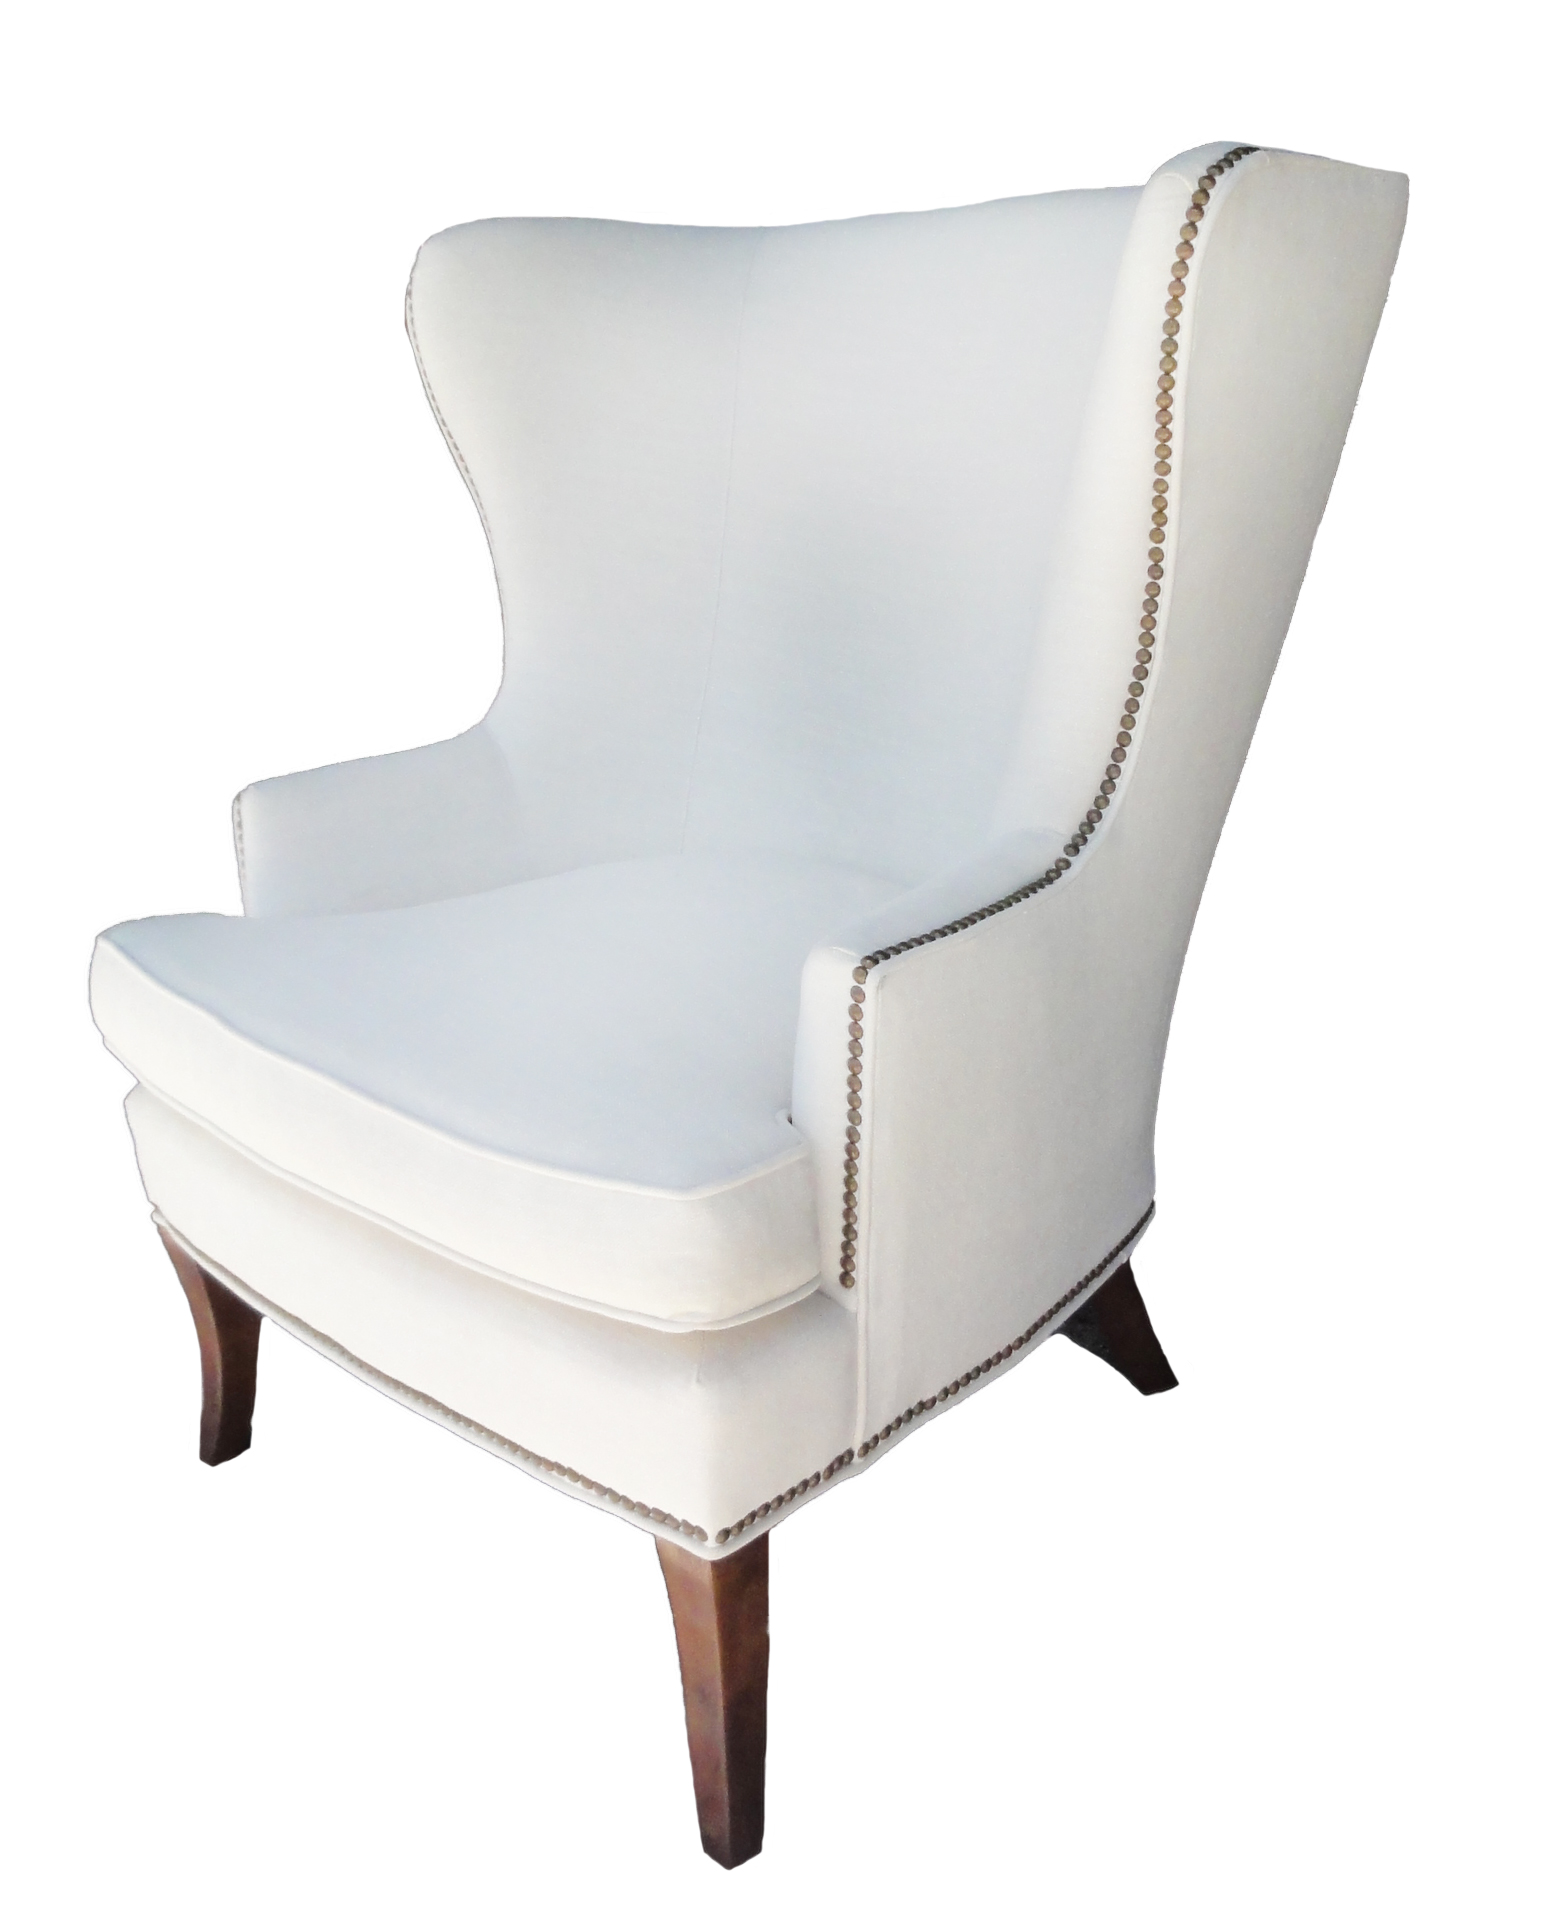 Hamlet-chair-santa-barbara-design-center-1